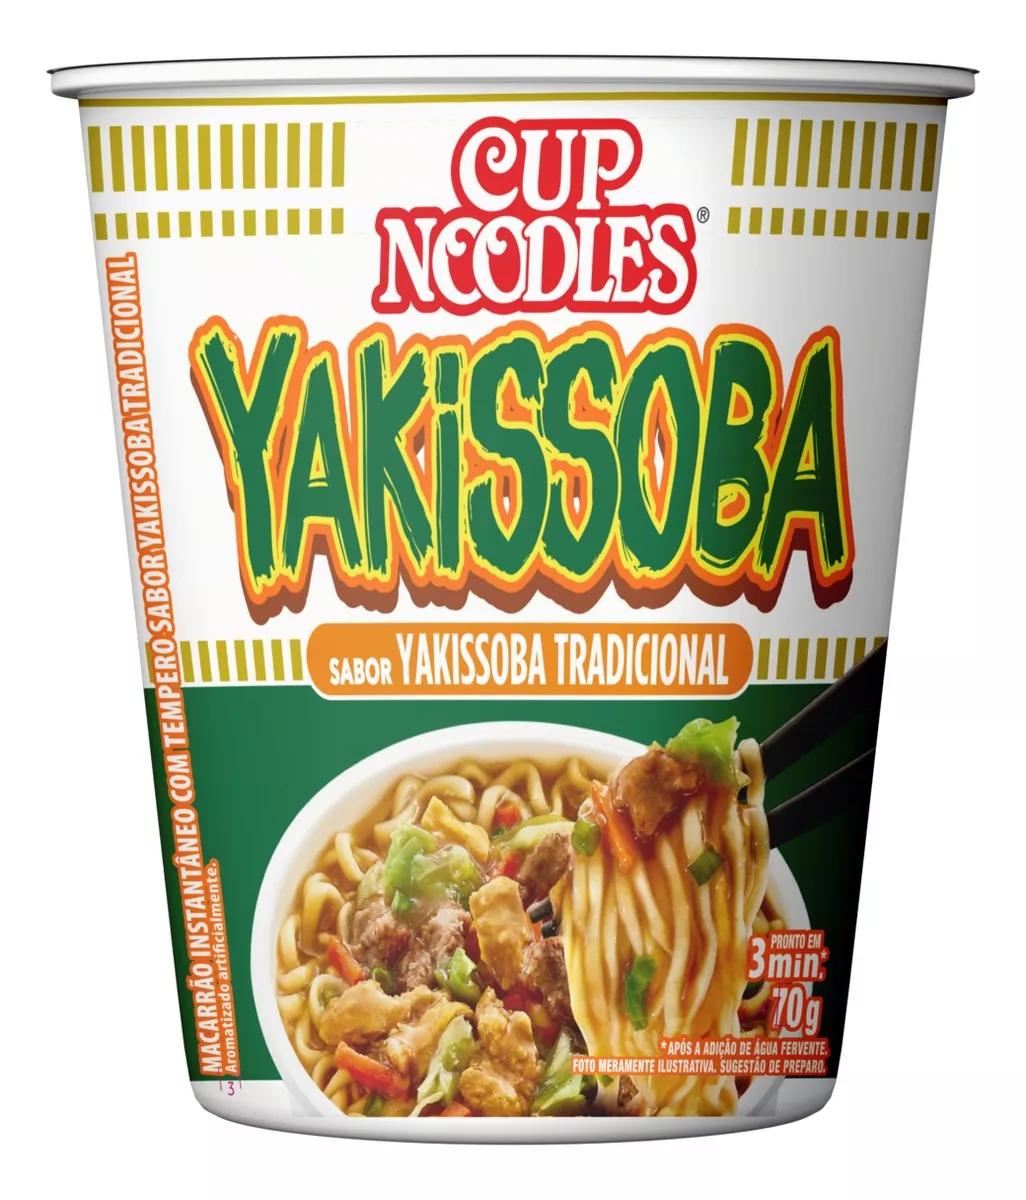 Segunda imagem para pesquisa de cup noodles